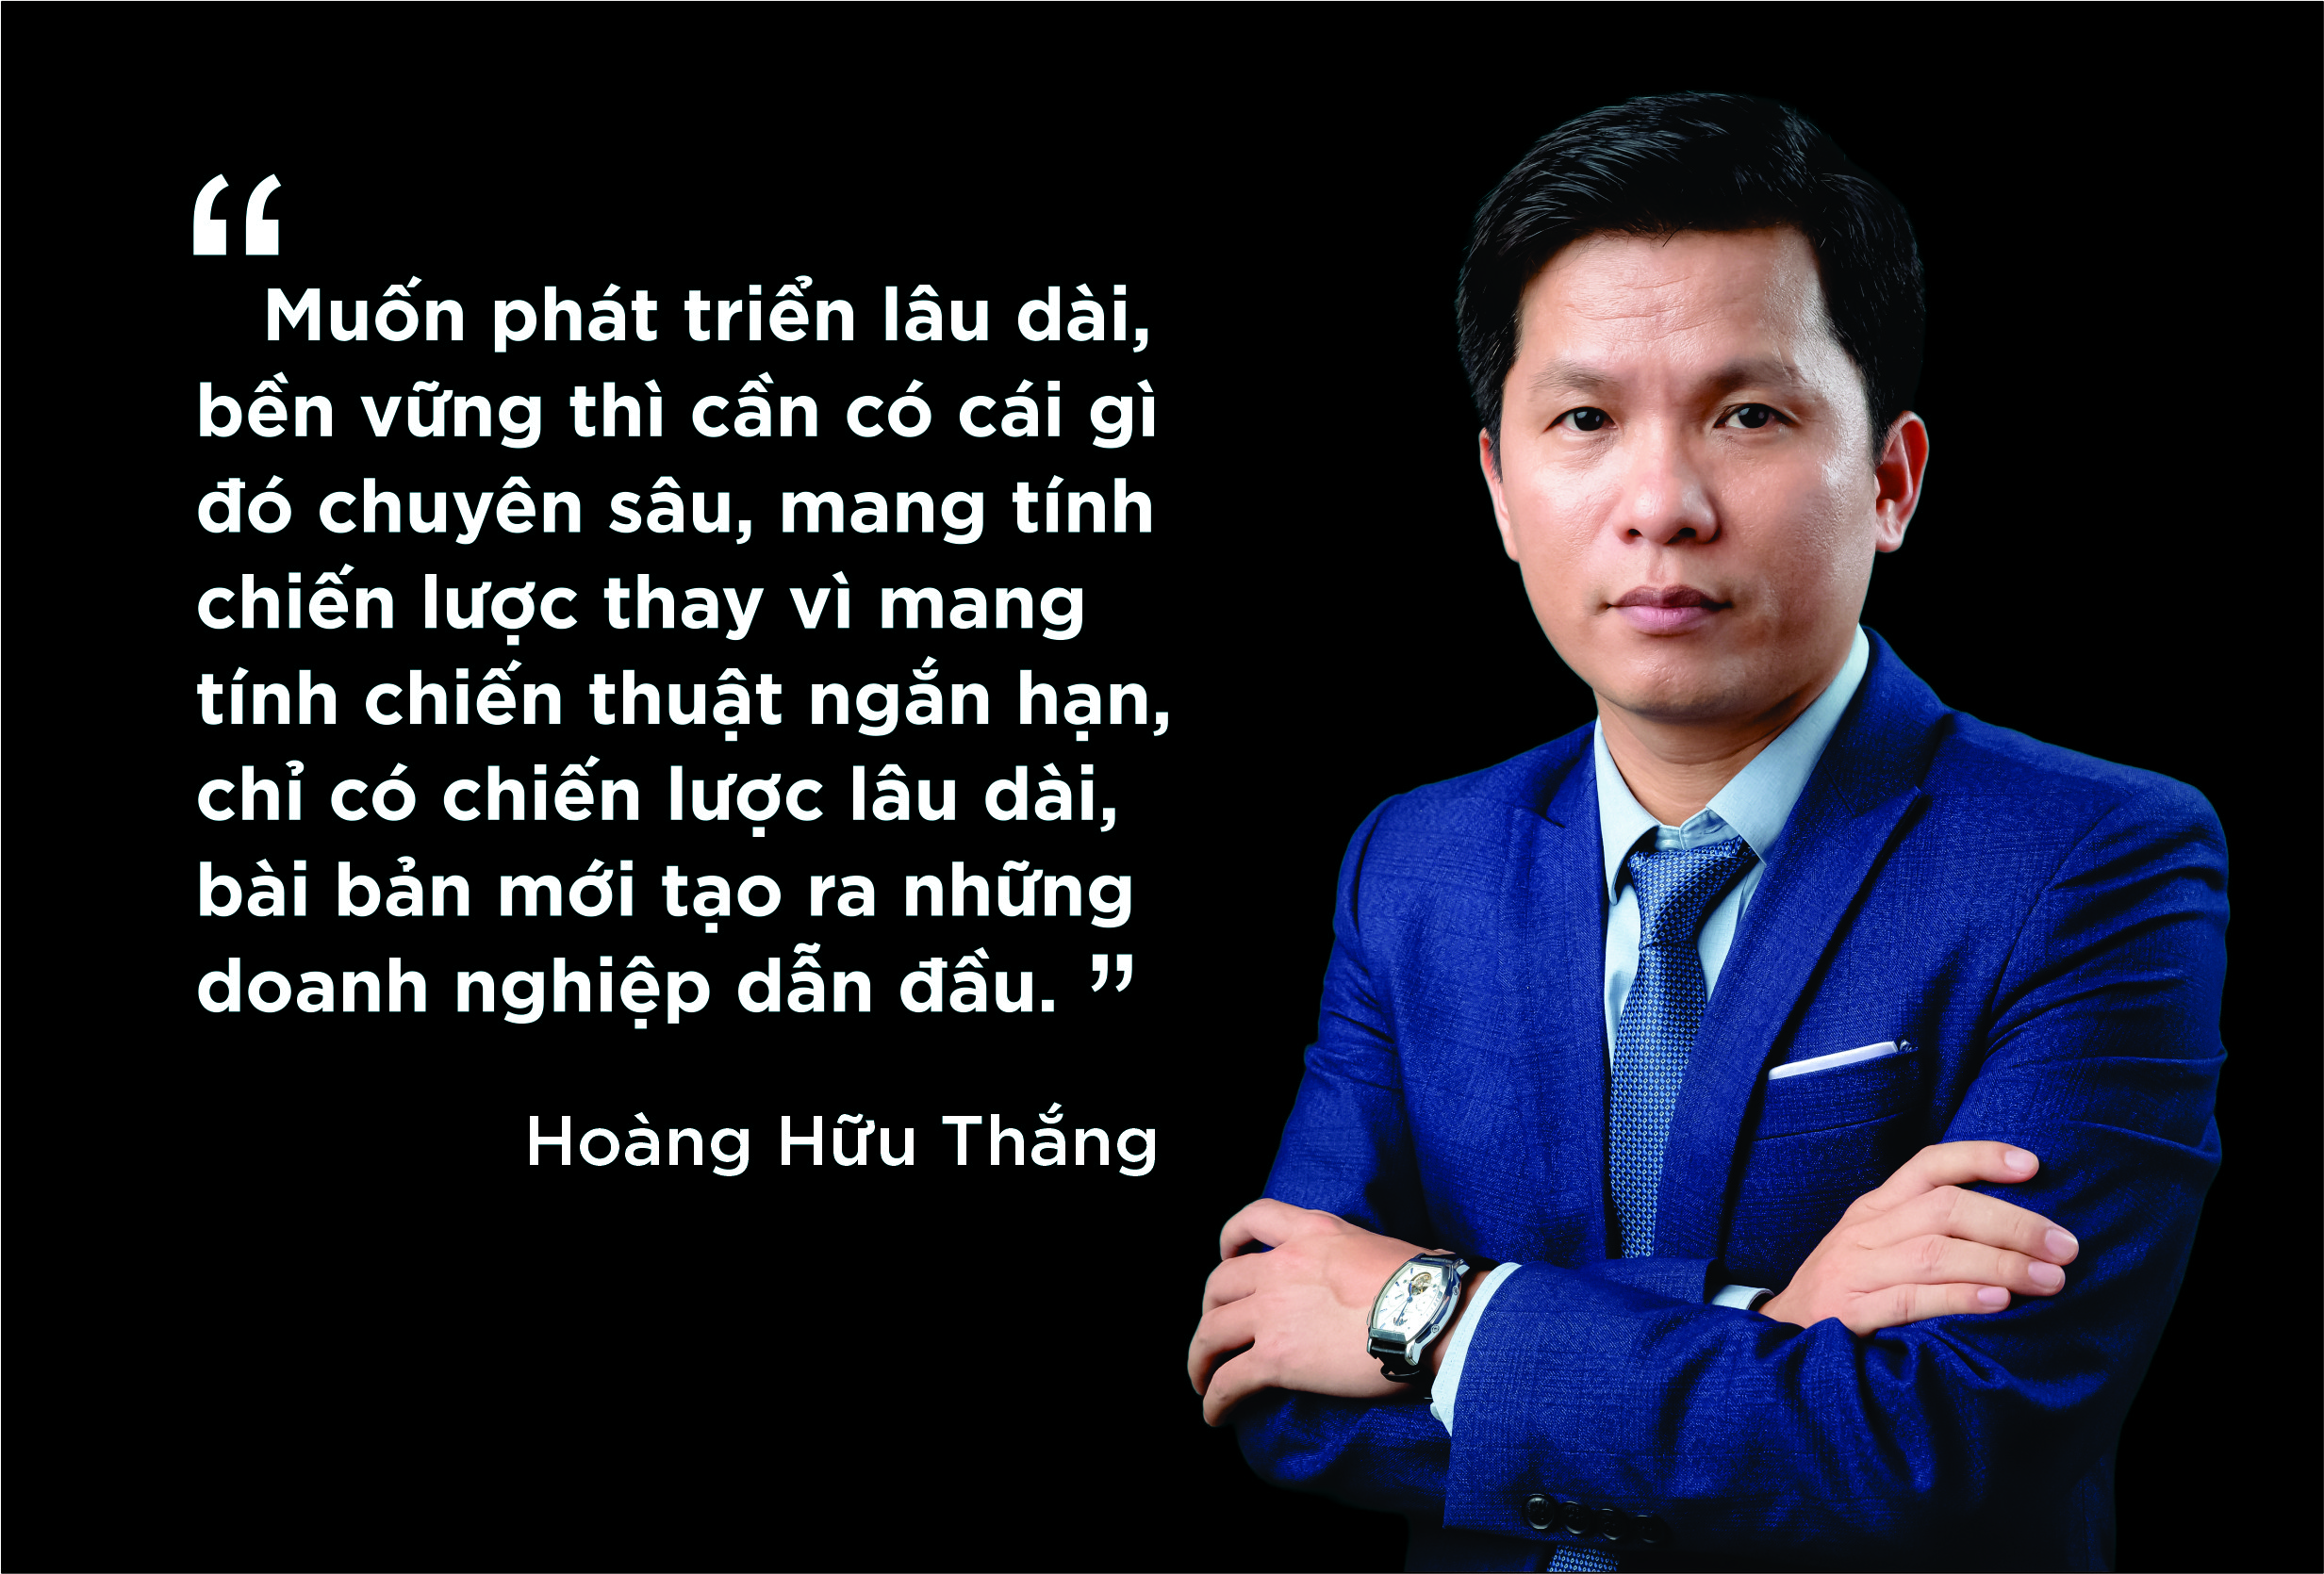 Ông Hoàng Hữu Thắng - Chủ tịch Tập đoàn Intech